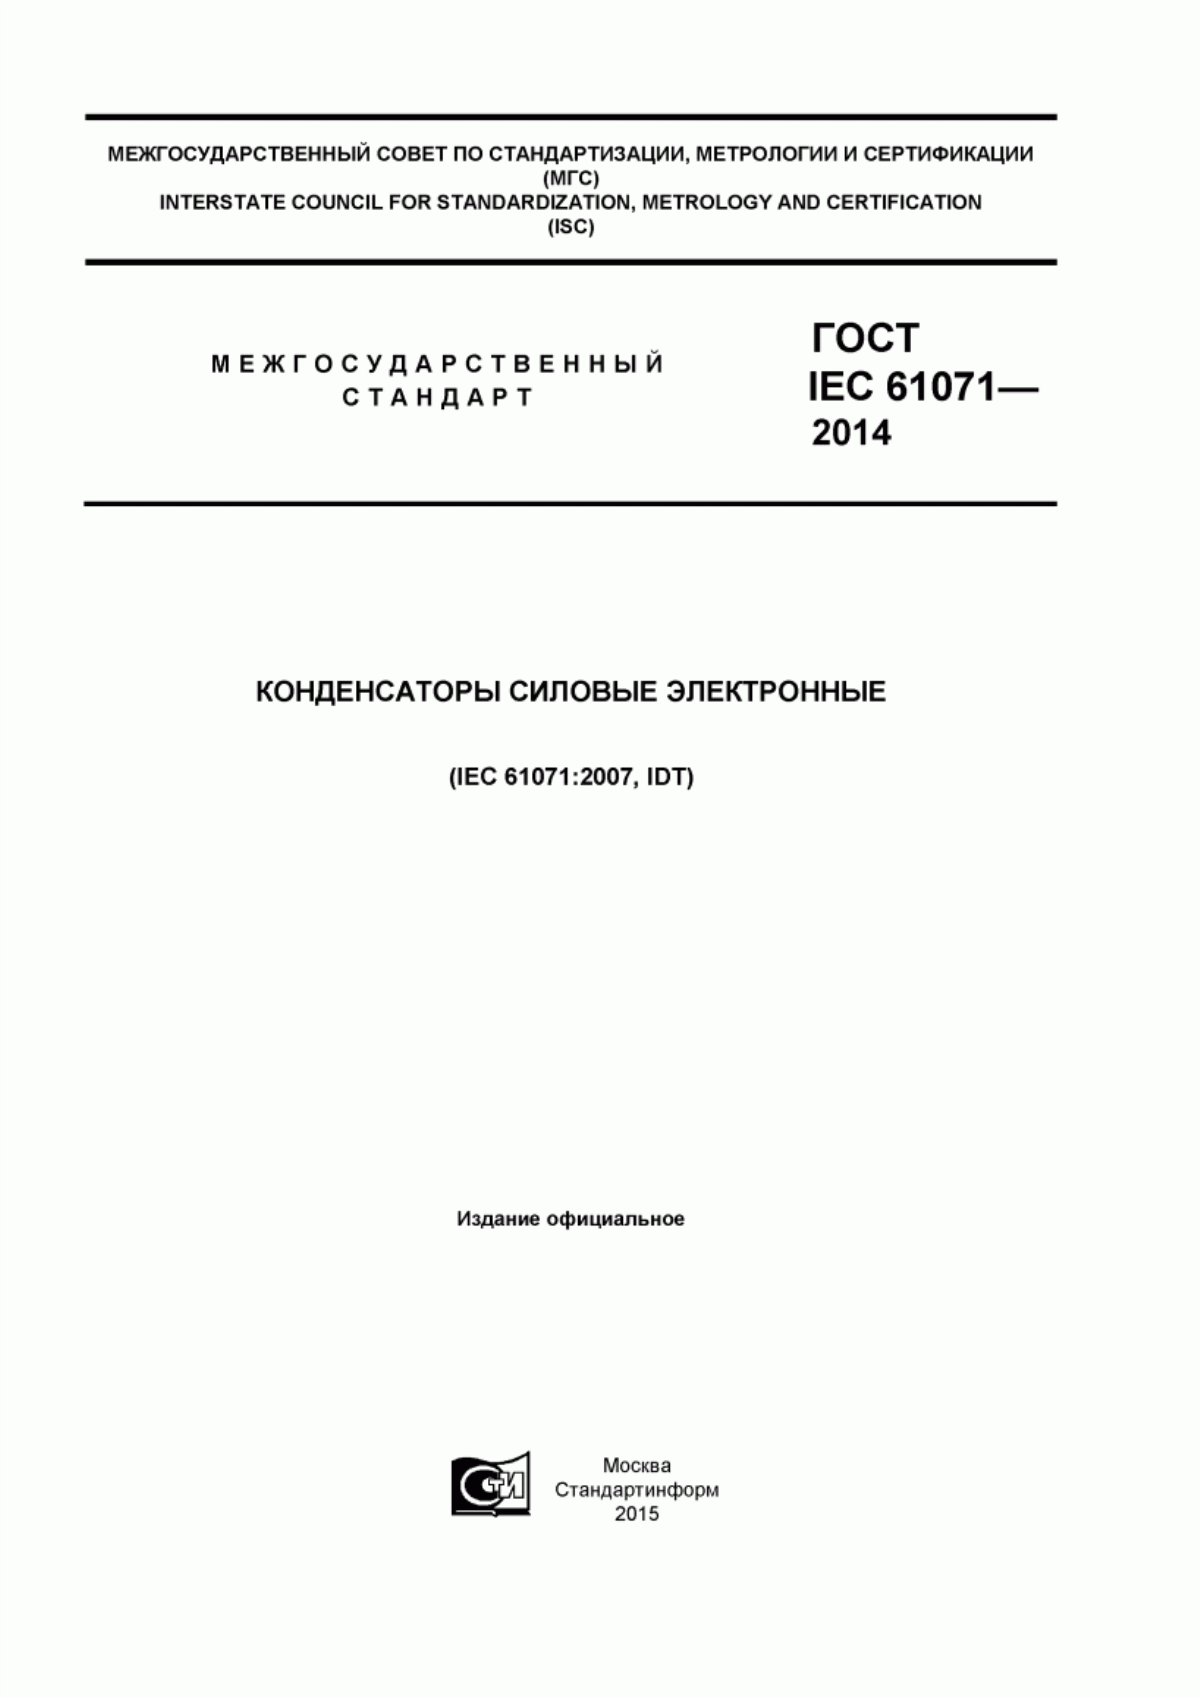 ГОСТ IEC 61071-2014 Конденсаторы силовые электронные